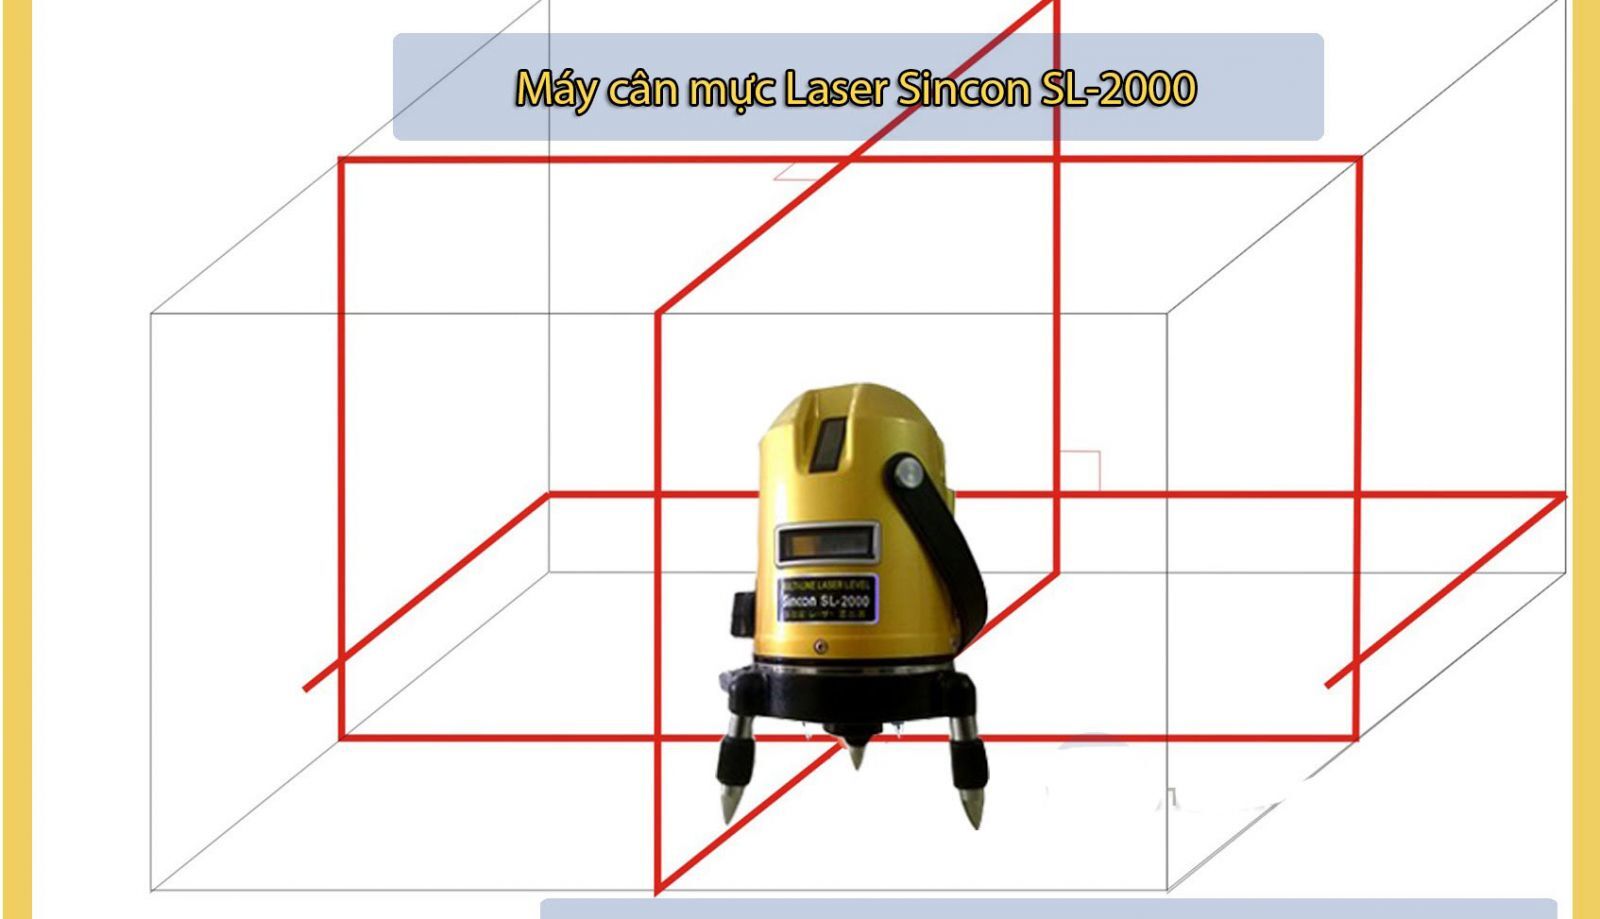 Máy cân mực laser Sincon SL-2000